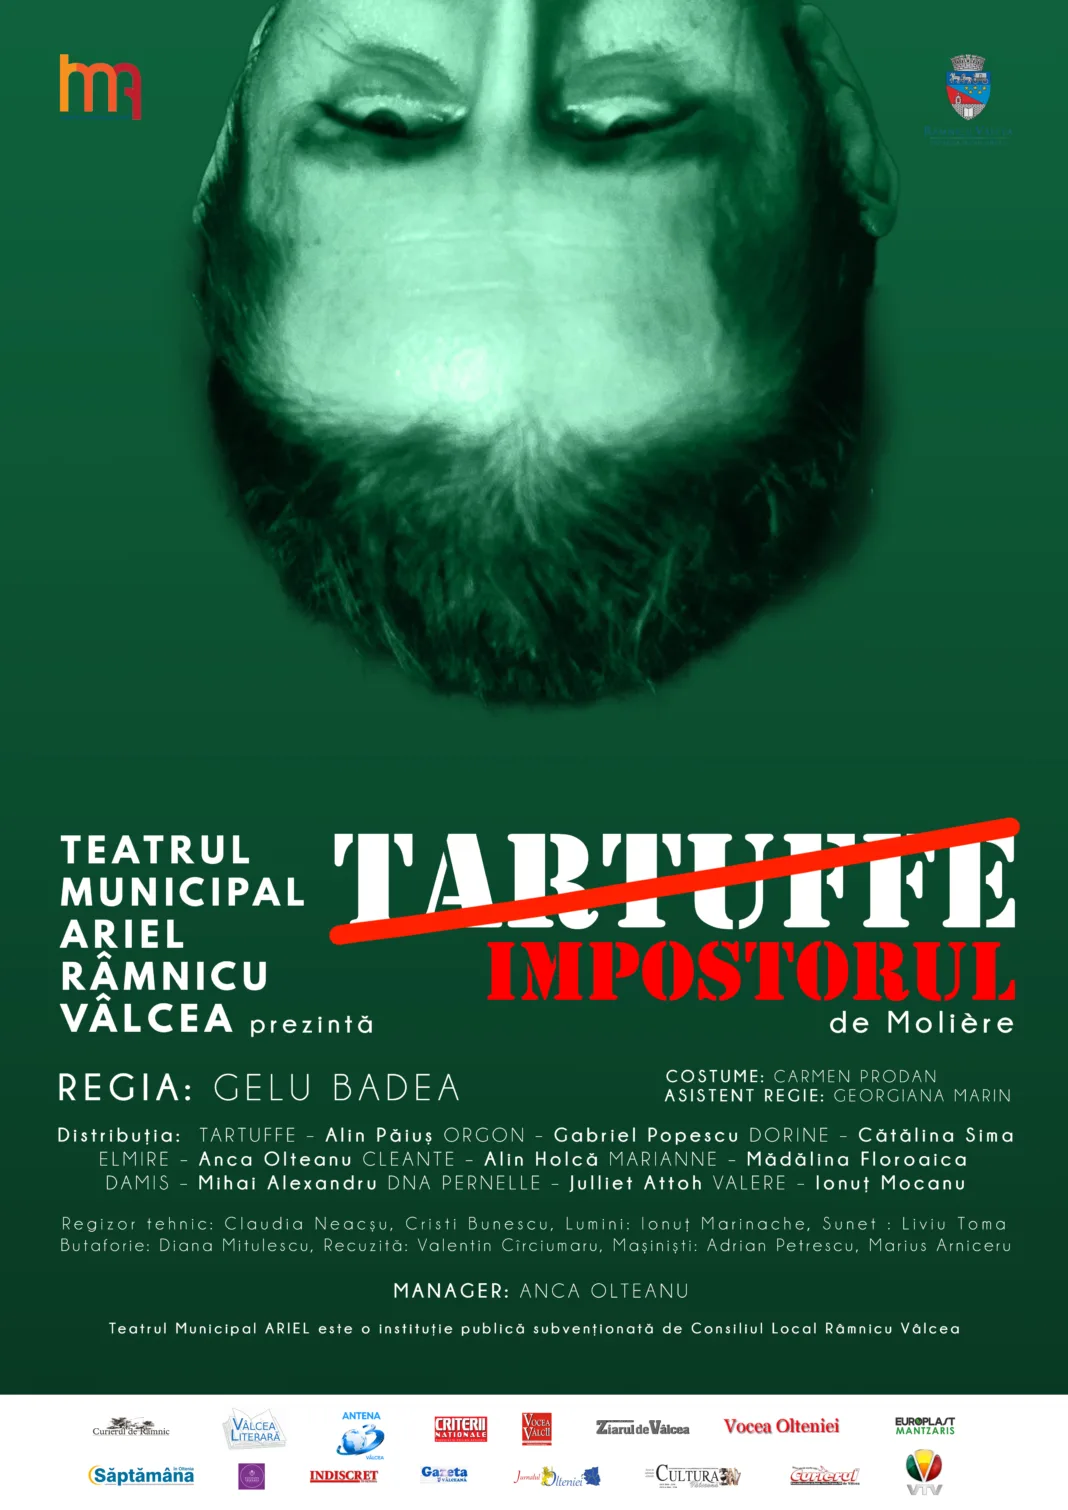 Teatrul Municipal ARIEL Râmnicu Vâlcea sărbătorește 25 de ani cu premiera spectacolului 'Tartuffe' de Molière